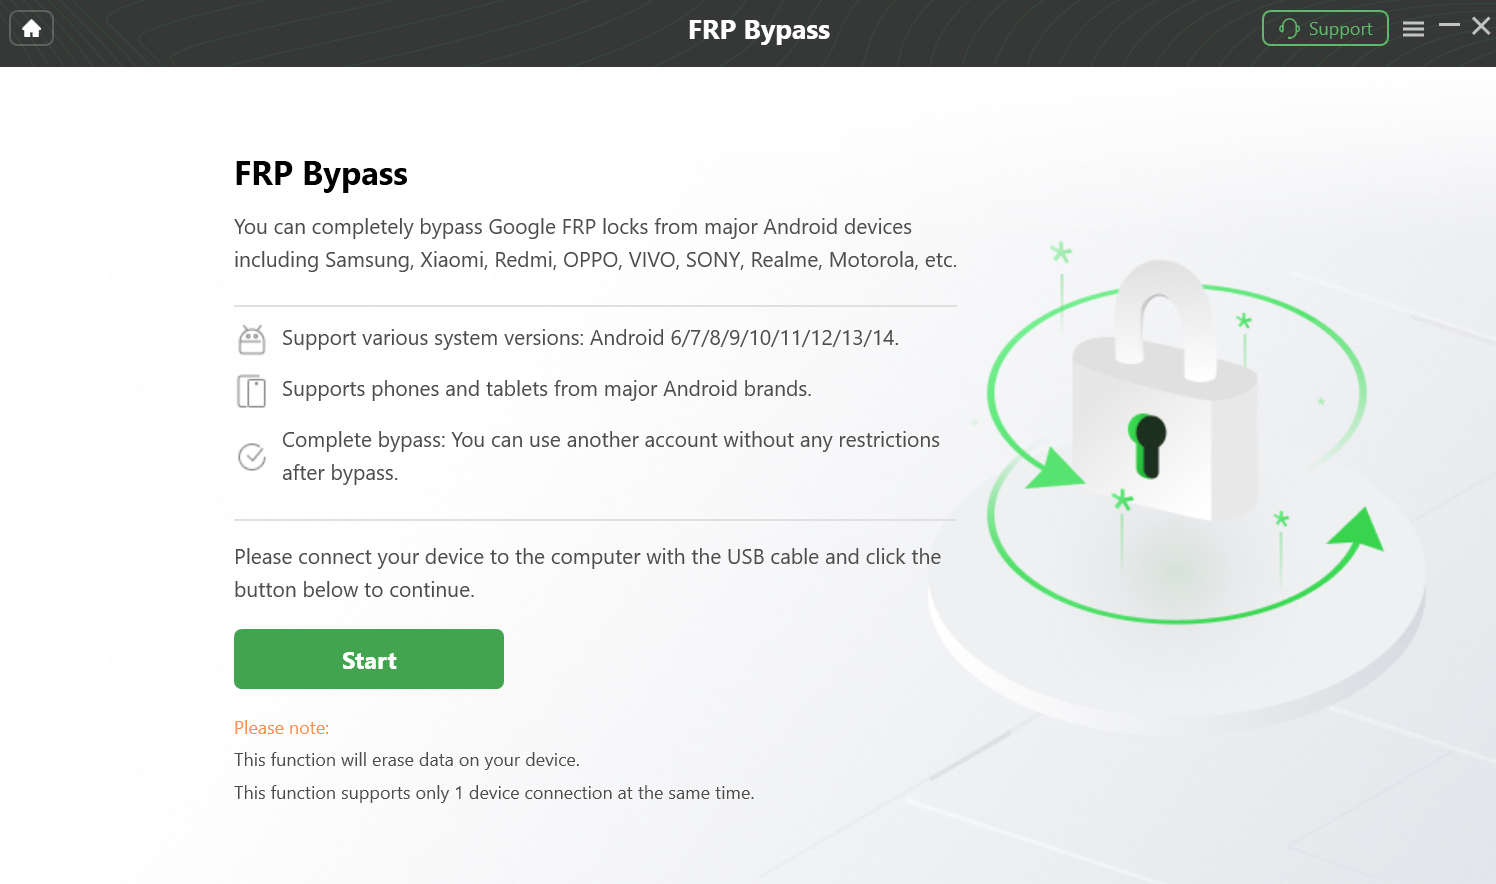 Click “Start”Button to Bypass FRP Lock